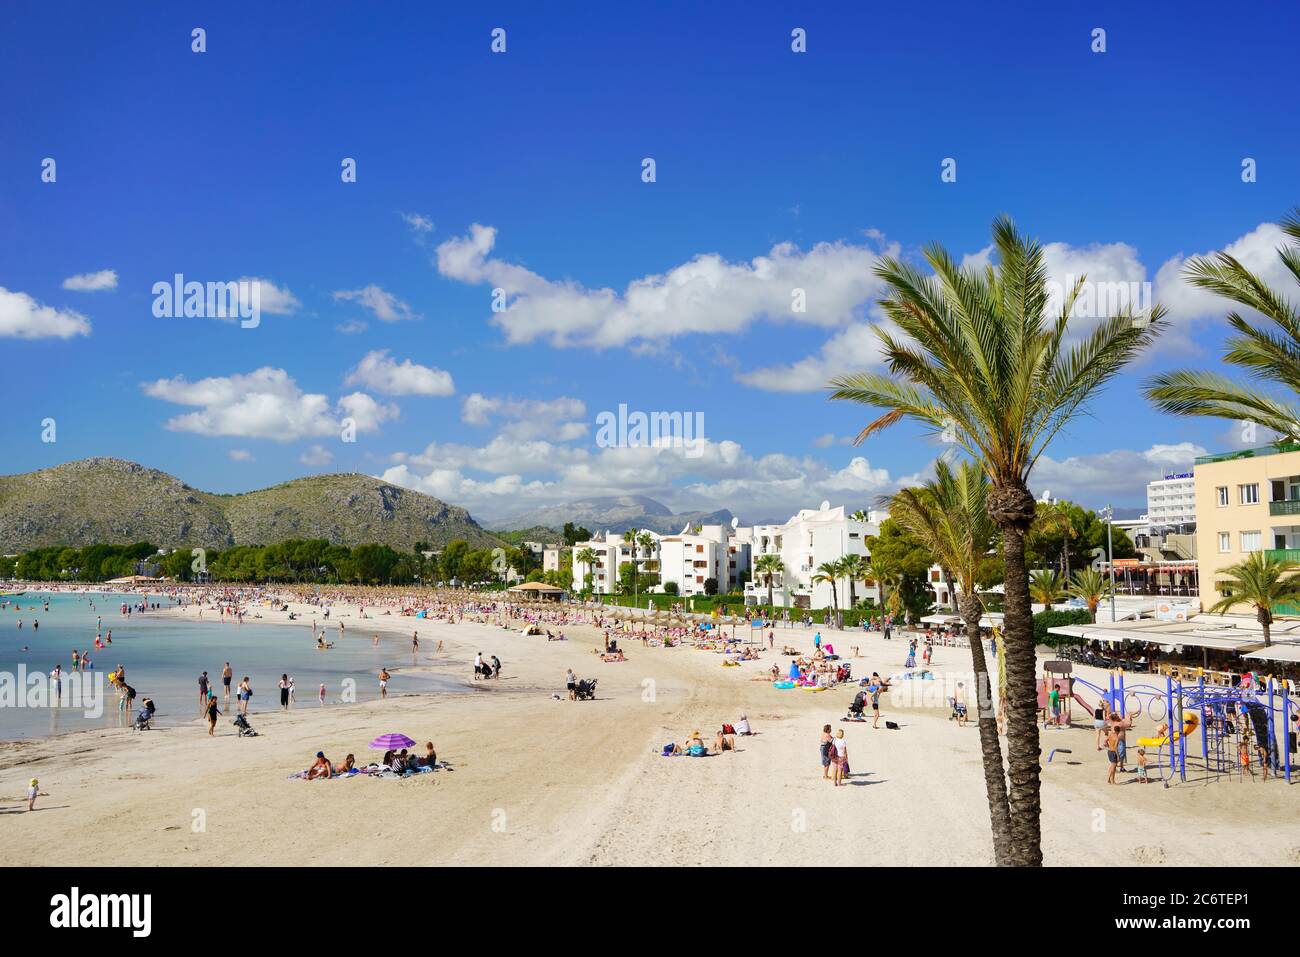 ALCÚDIA, MALLORCA, ESPAGNE - 4 OCTOBRE 2018 : la plage d'Alcudia dans le nord de Majorque avec des touristes par temps ensoleillé. Banque D'Images